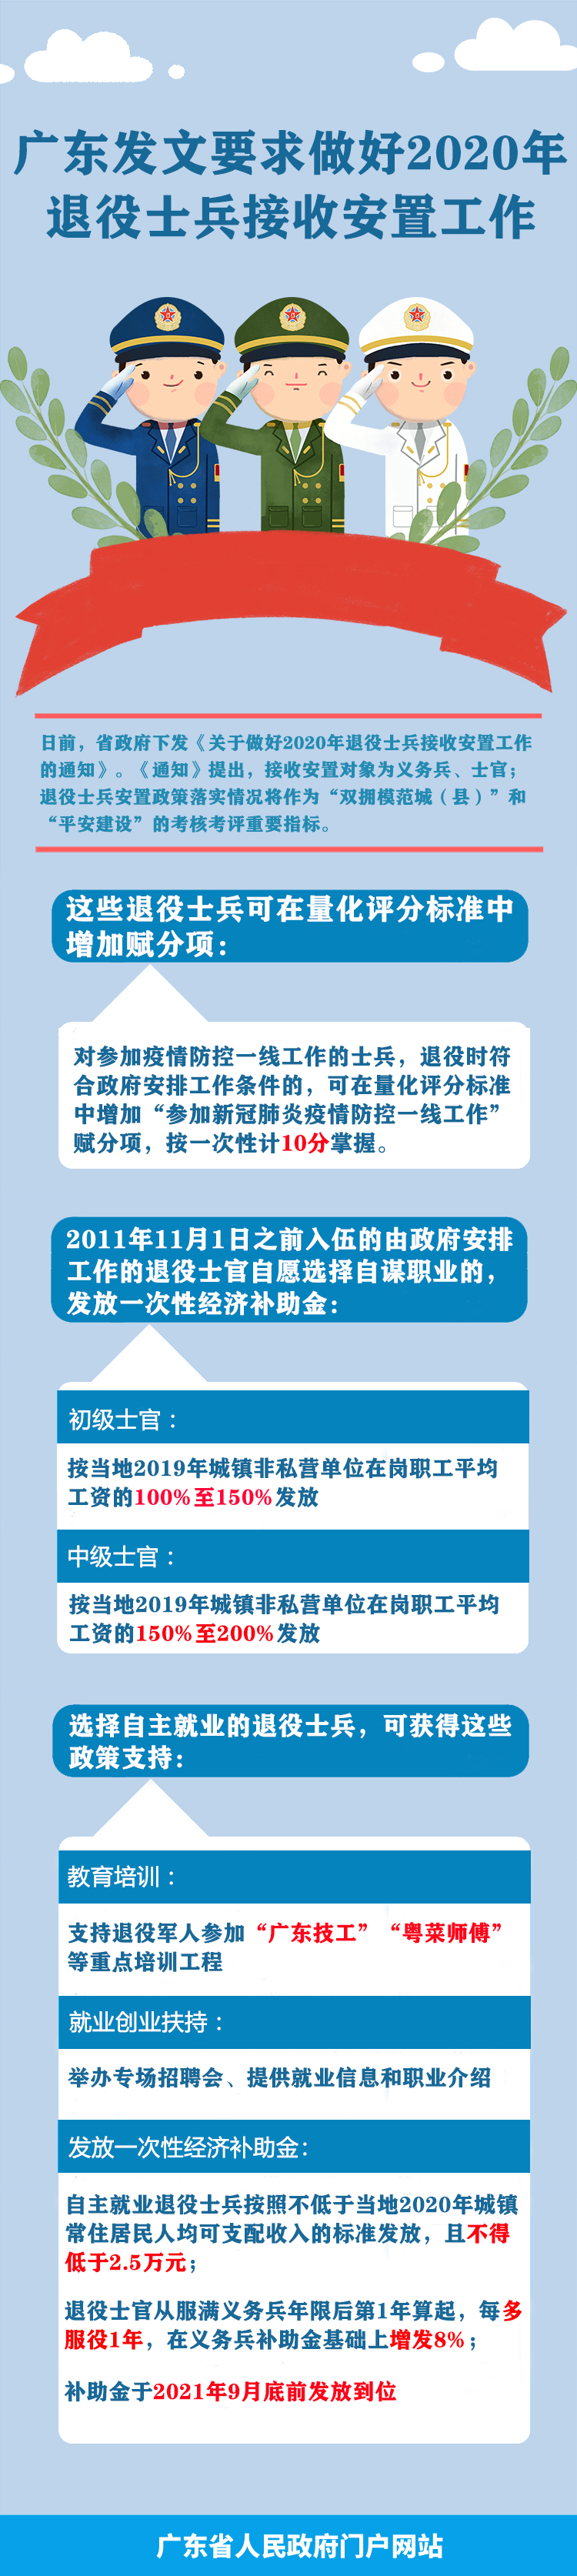 一图读懂广东省人民政府关于做好2020年退役士兵接收安置工作的通知.jpg